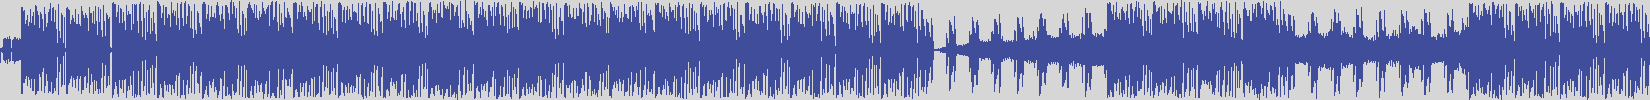 noclouds_chillout [NOC100] Mont Gomery - Super [Original Mix] audio wave form